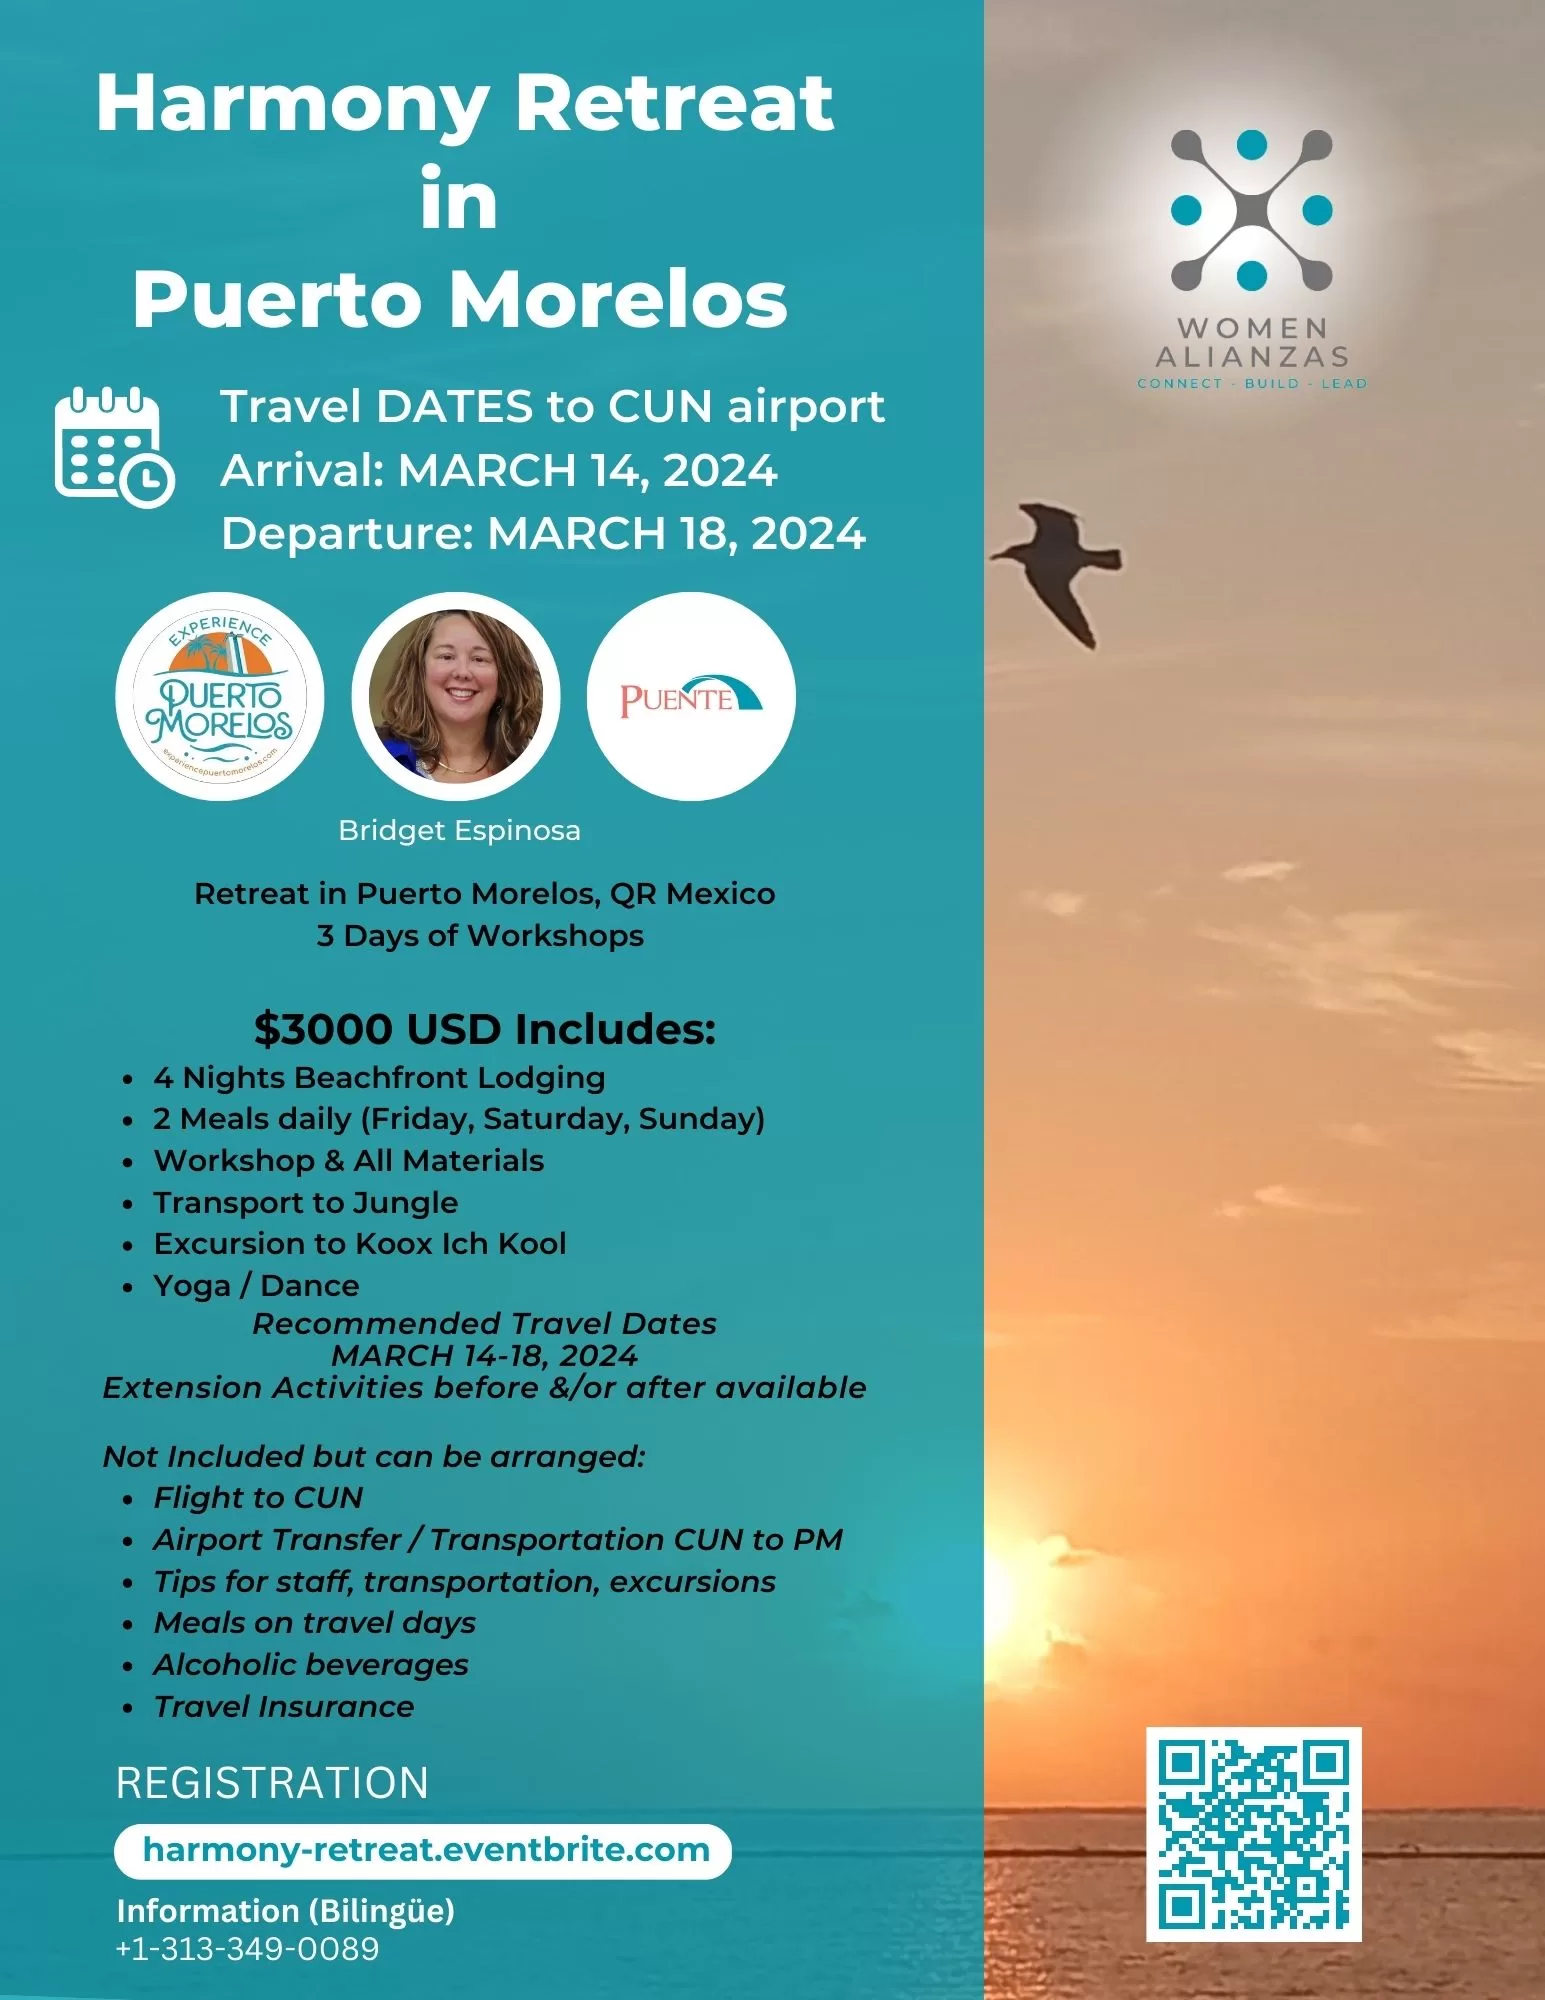 Details of a women's retreat in Puerto Morelos Nov 3-5, 2023